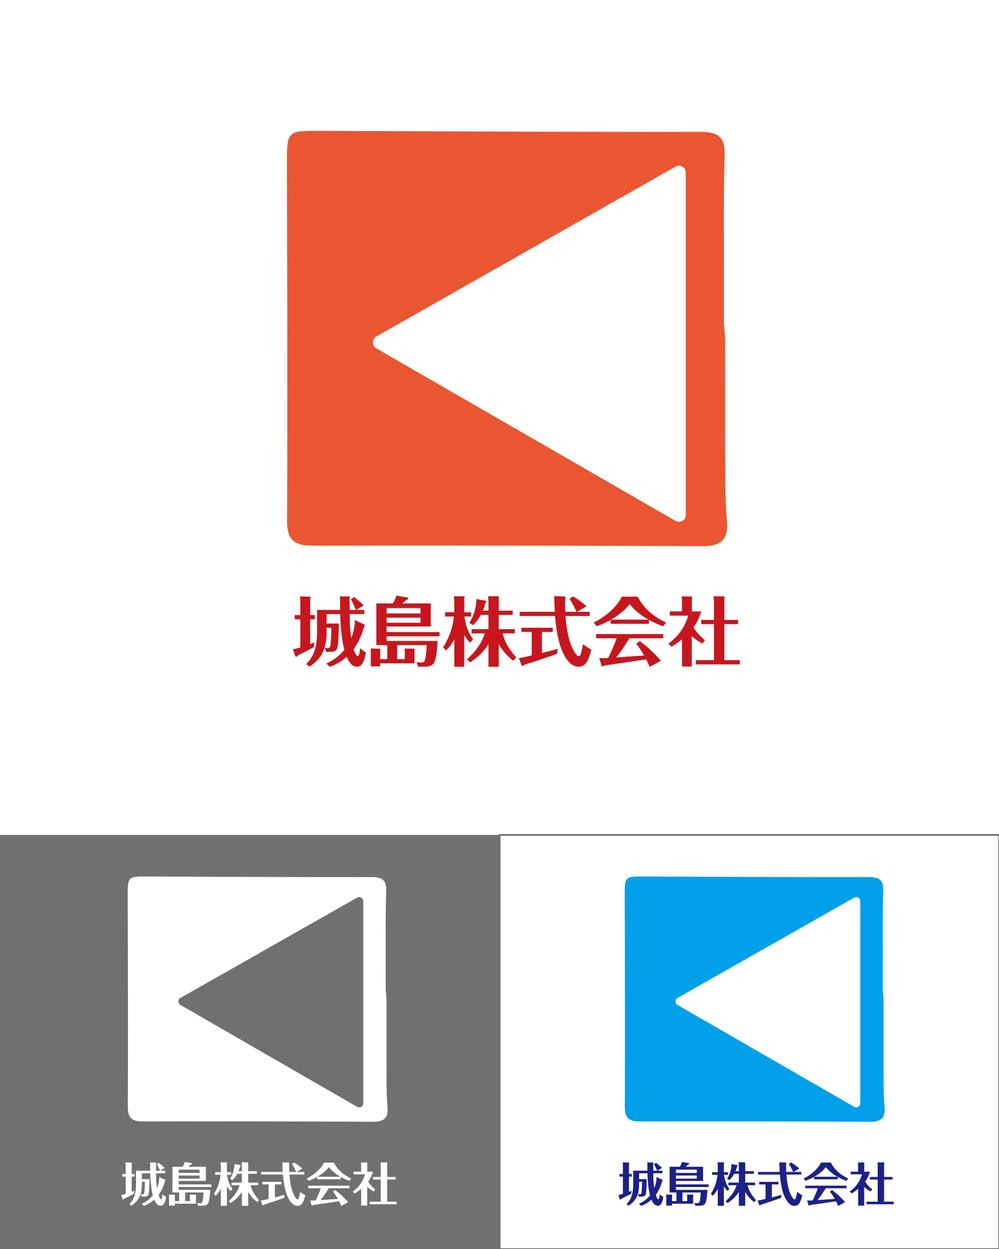 「城島株式会社」のウェブ・印刷物用に使用するロゴデザイン